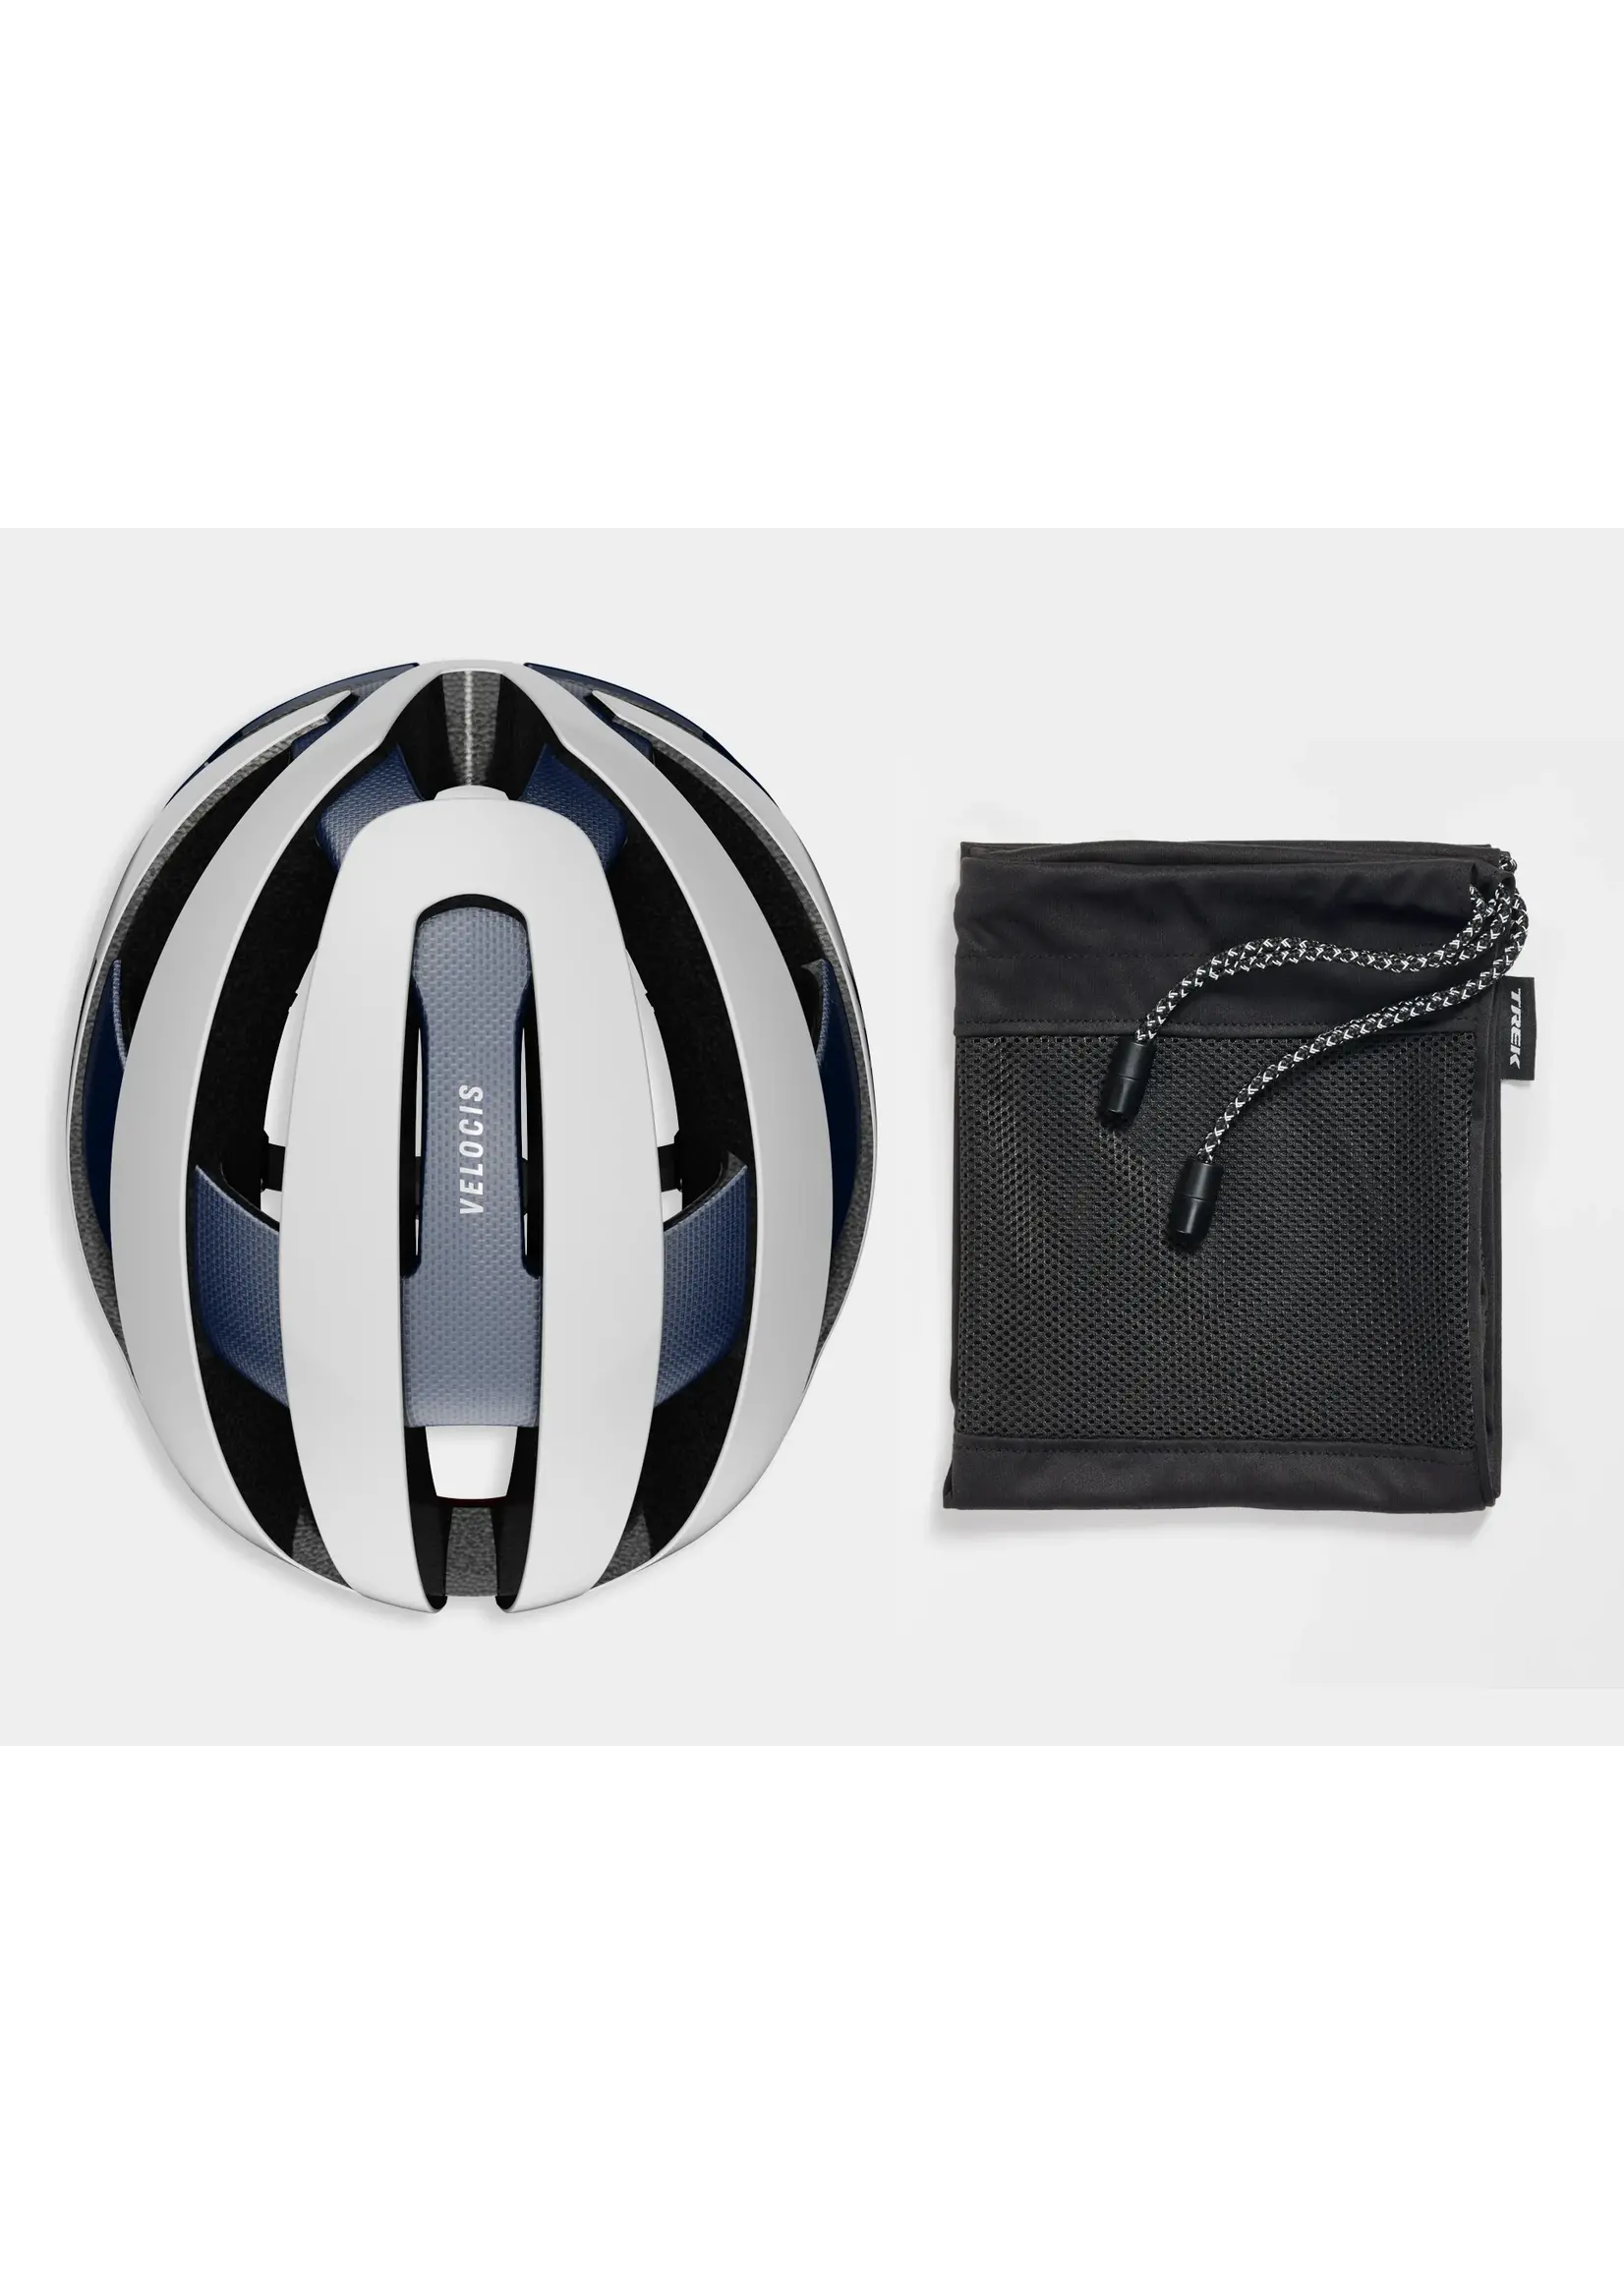 TREK Velocis Mips Road Bike Helmet